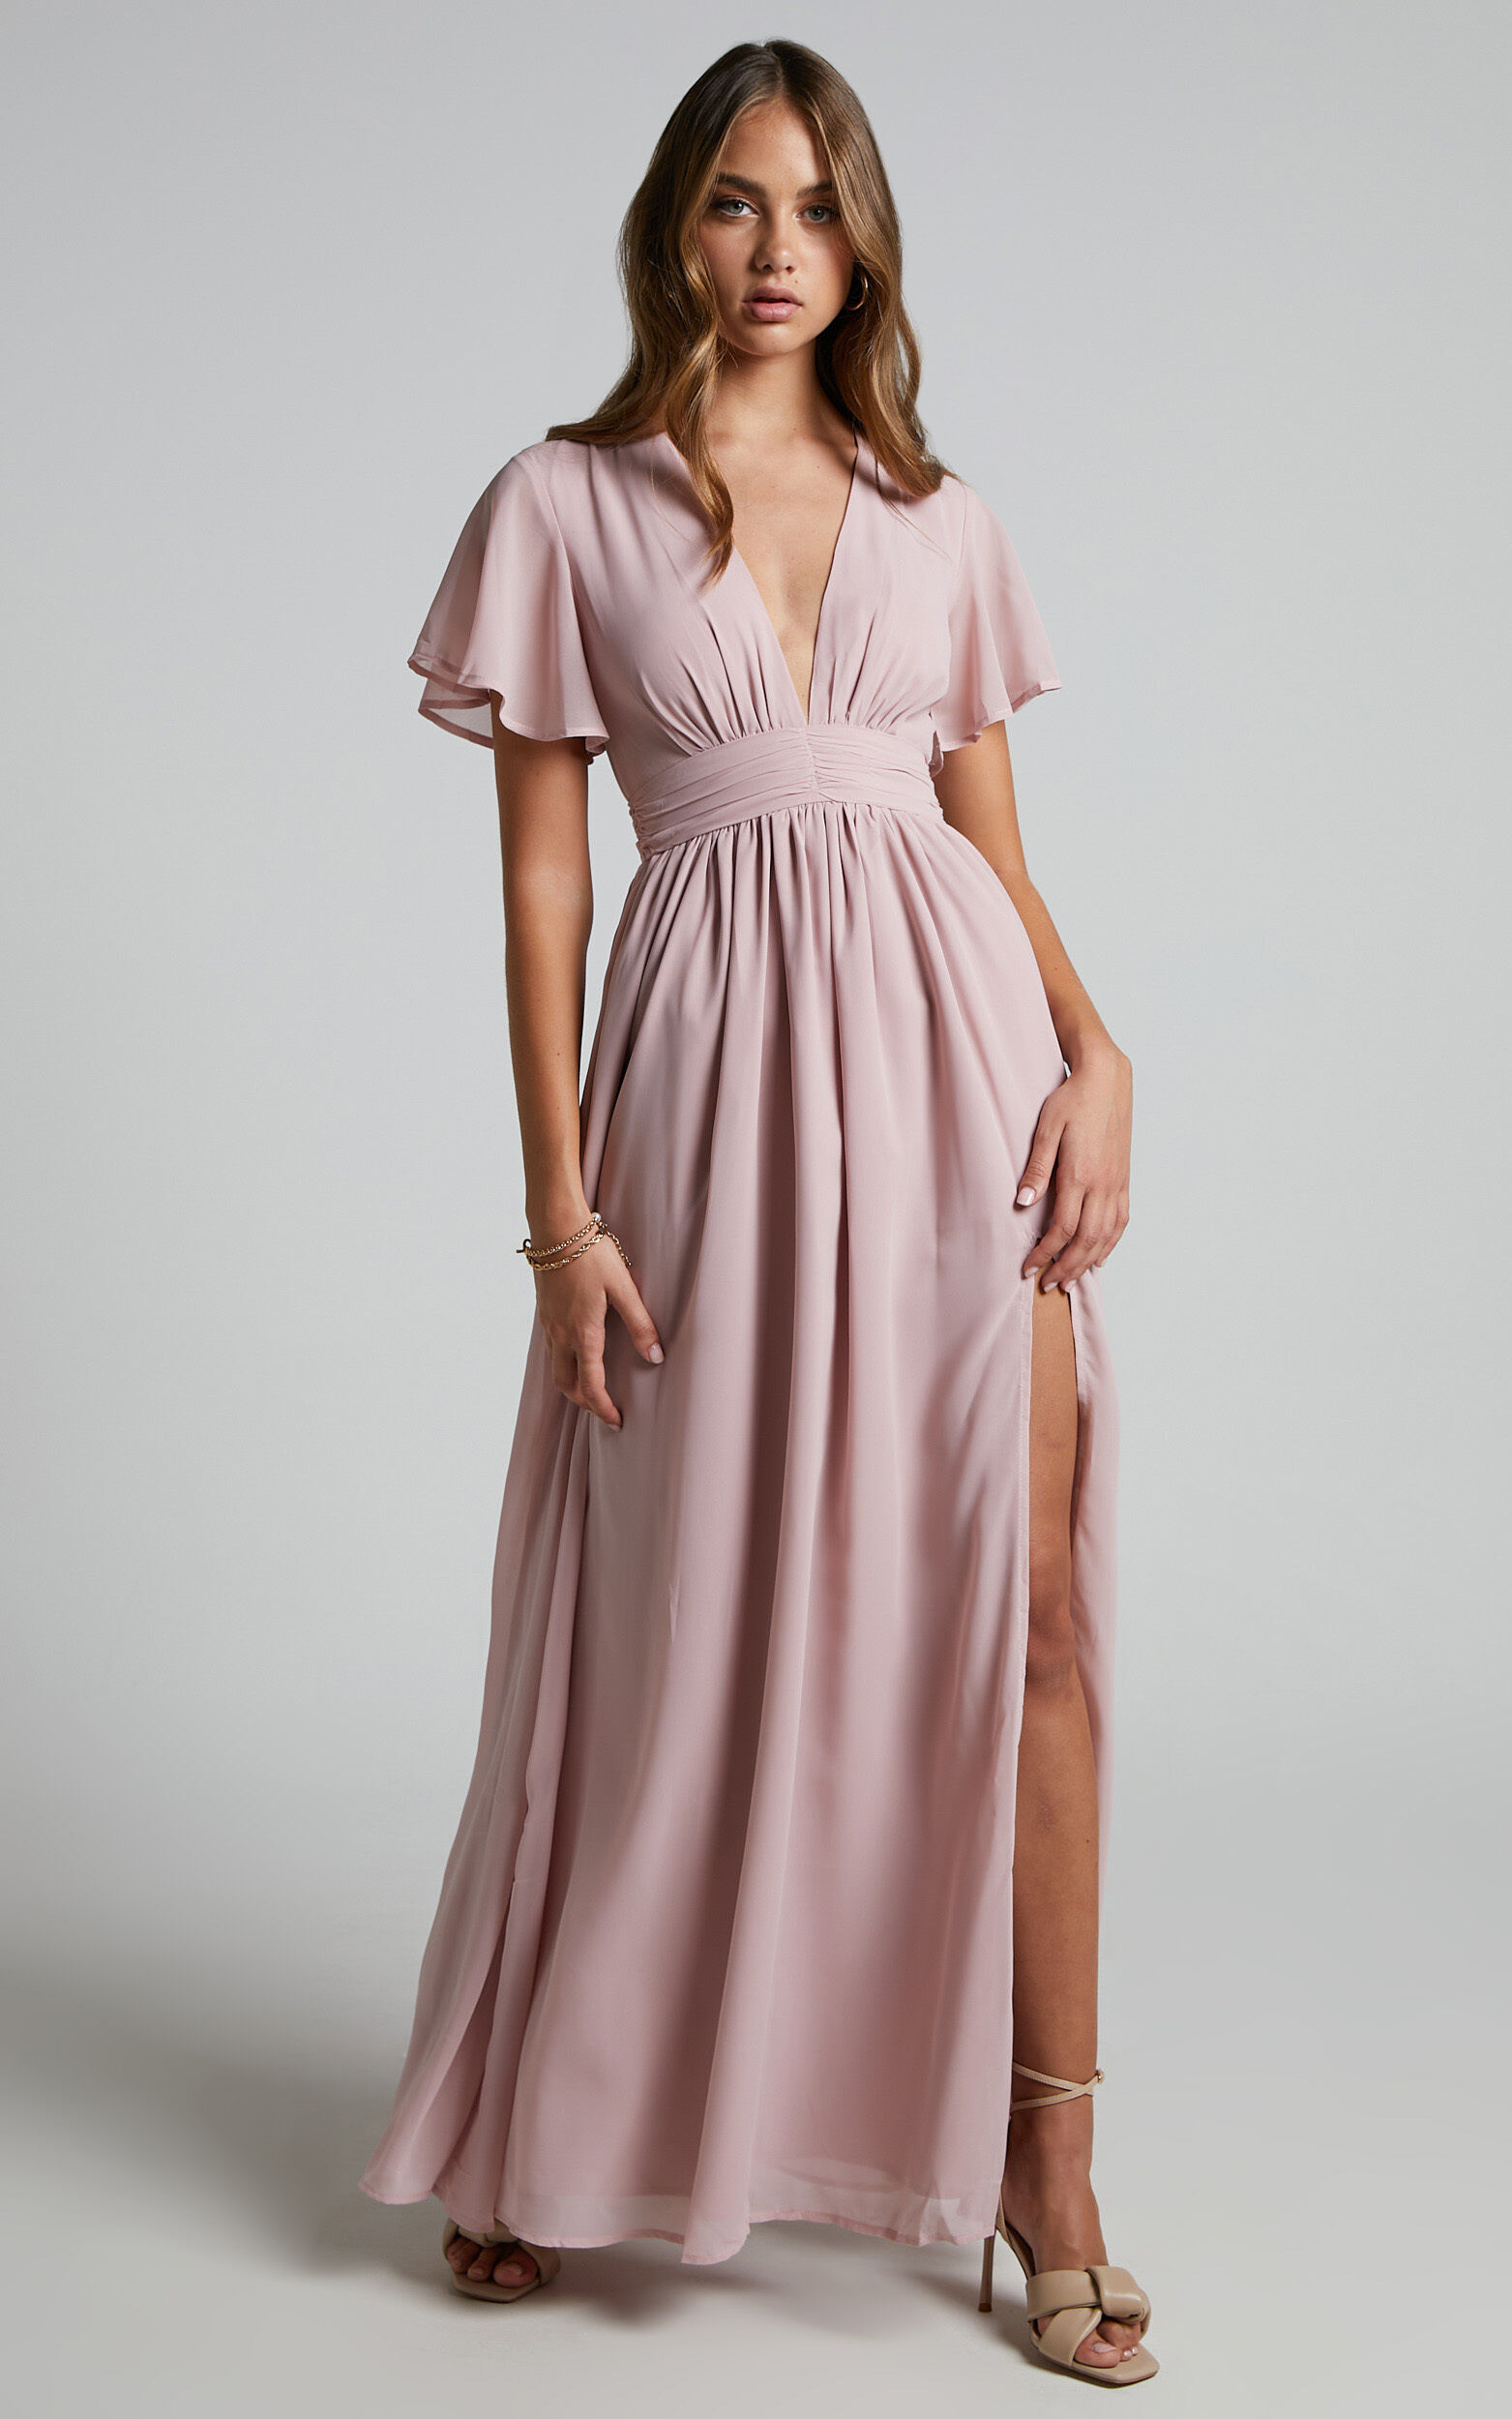 December Midaxi Dress - Empire Waist Dress in Dusty Pink - 06, PNK1